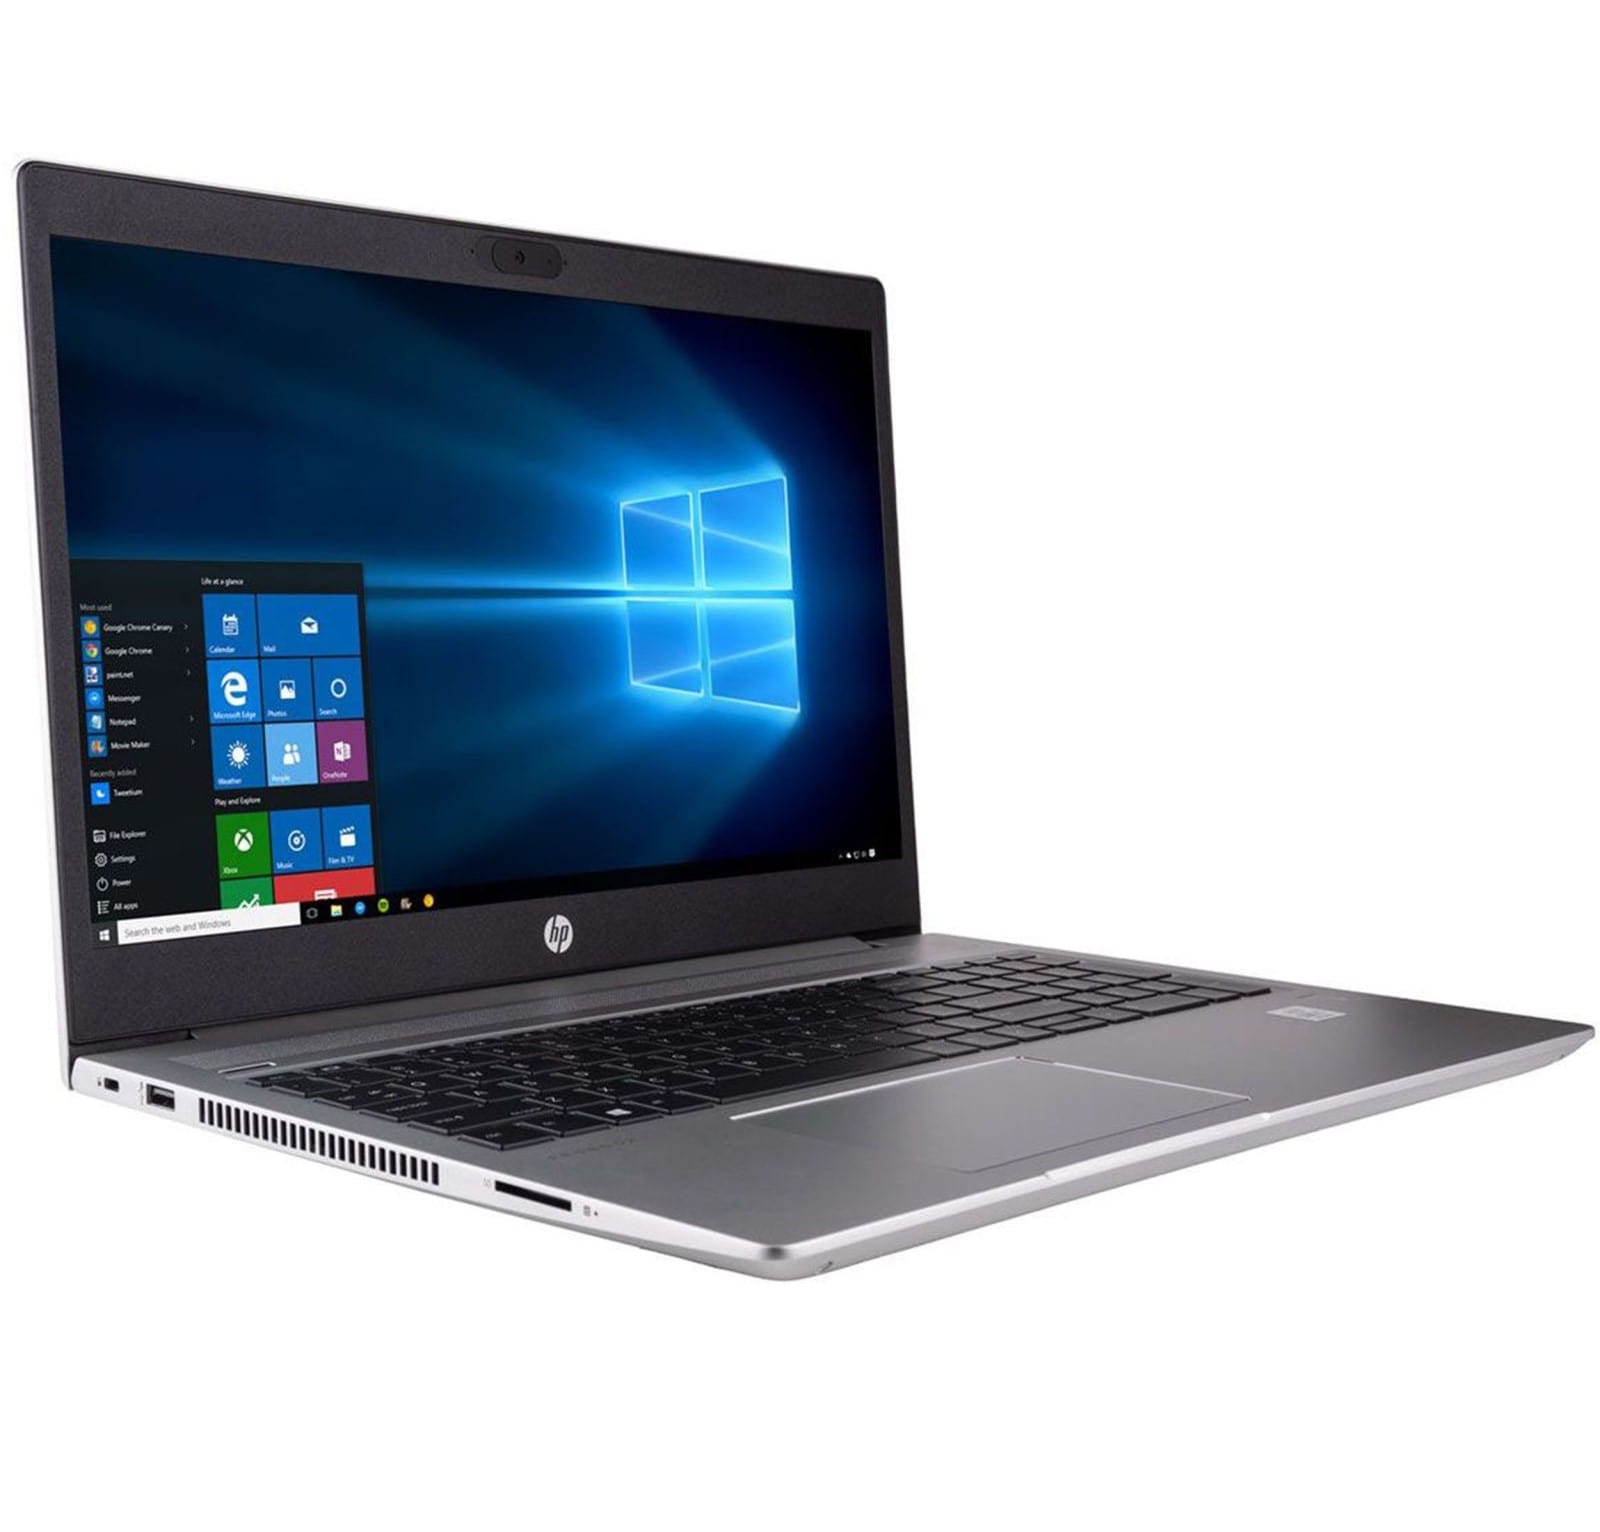 لپ تاپ اچ پی پروبوک HP ProBook 470 G5 صفحه 17.3 اینچی پردازنده Core i3/i5/i7 نسل هشتم گرافیک دو گیگ انویدیا GeForce 930MX